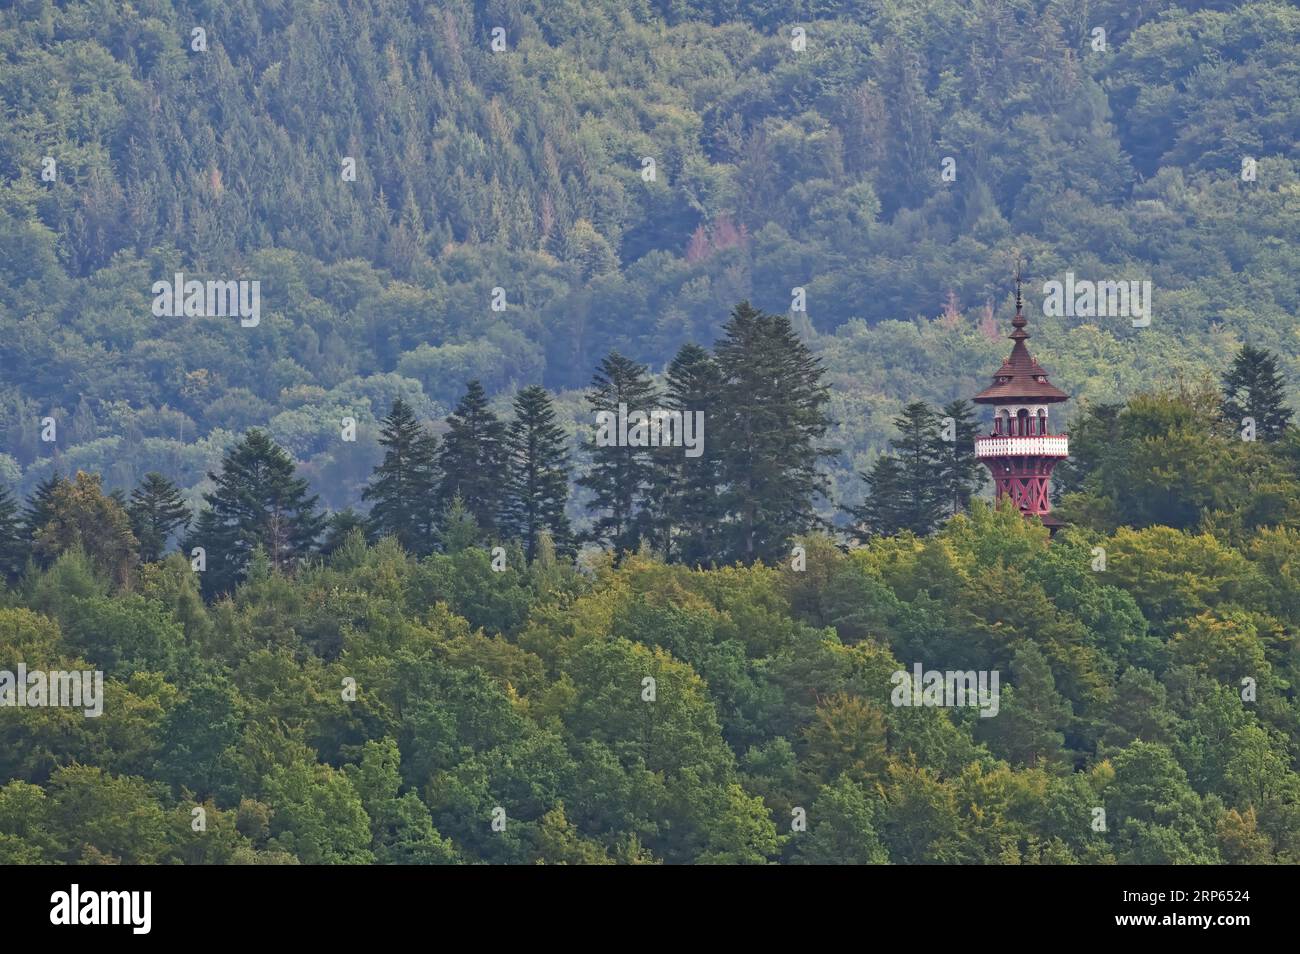 Jurkovic Aussichtsturm. Wachtturm im Walachian Open Air Museum, Roznov Pod Radhostem Stadt. Beliebter touristischer Punkt der Region. Stockfoto